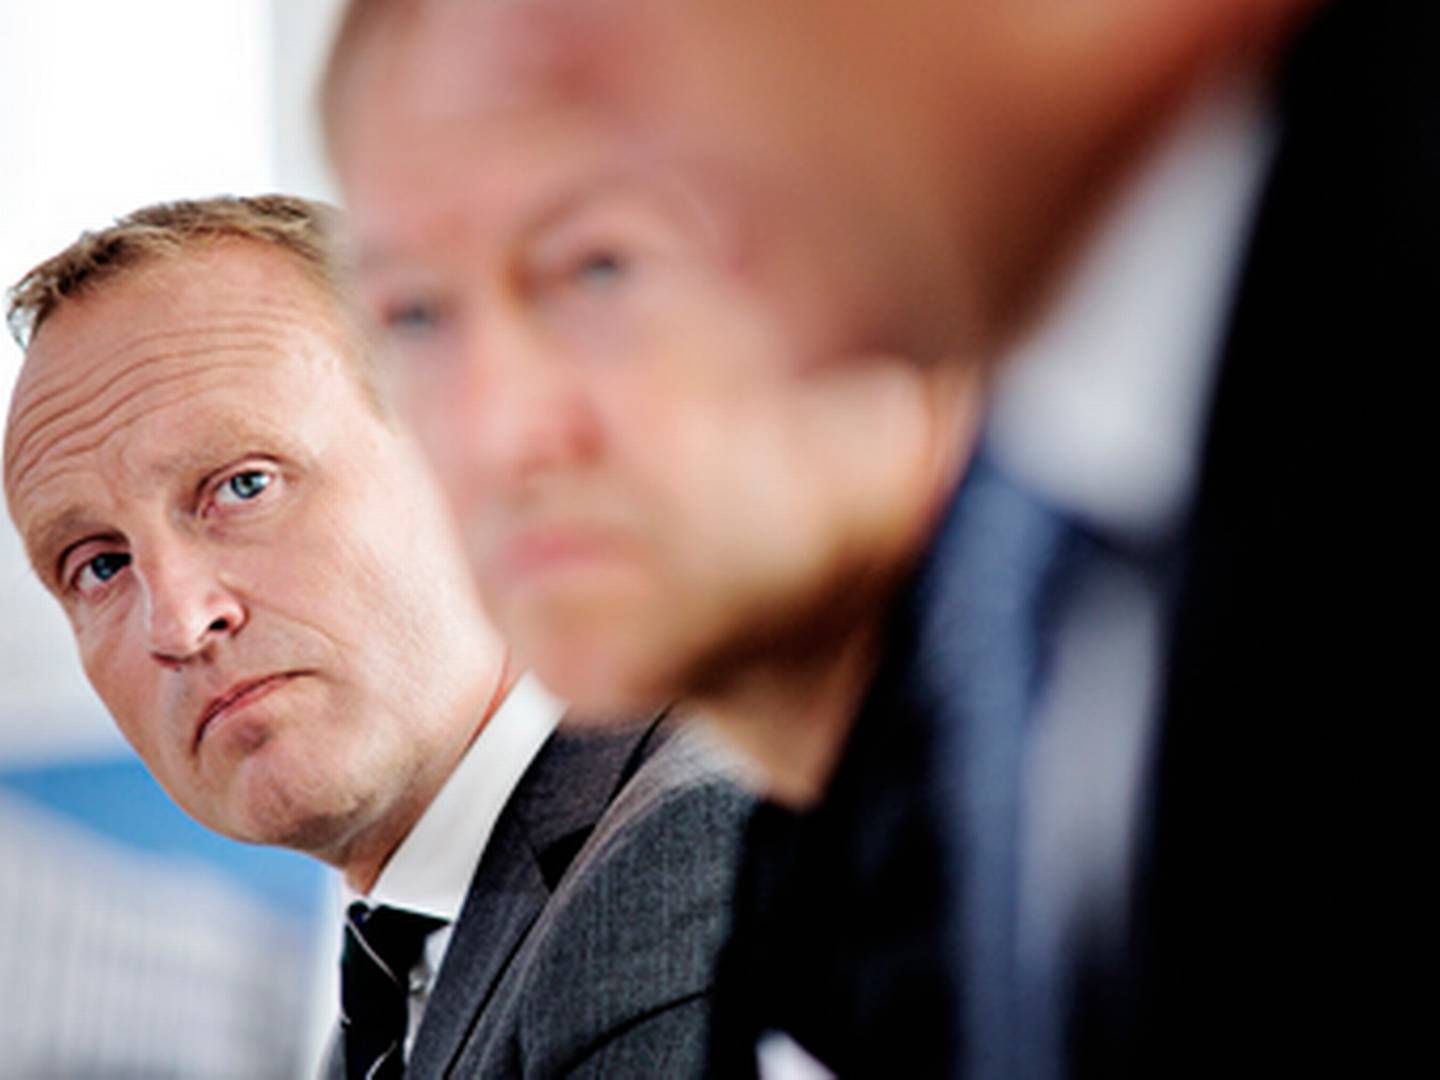 Den danske klimaminister, Martin Lidegaard, kan følges næsten live i forhandlingerne til COP19.